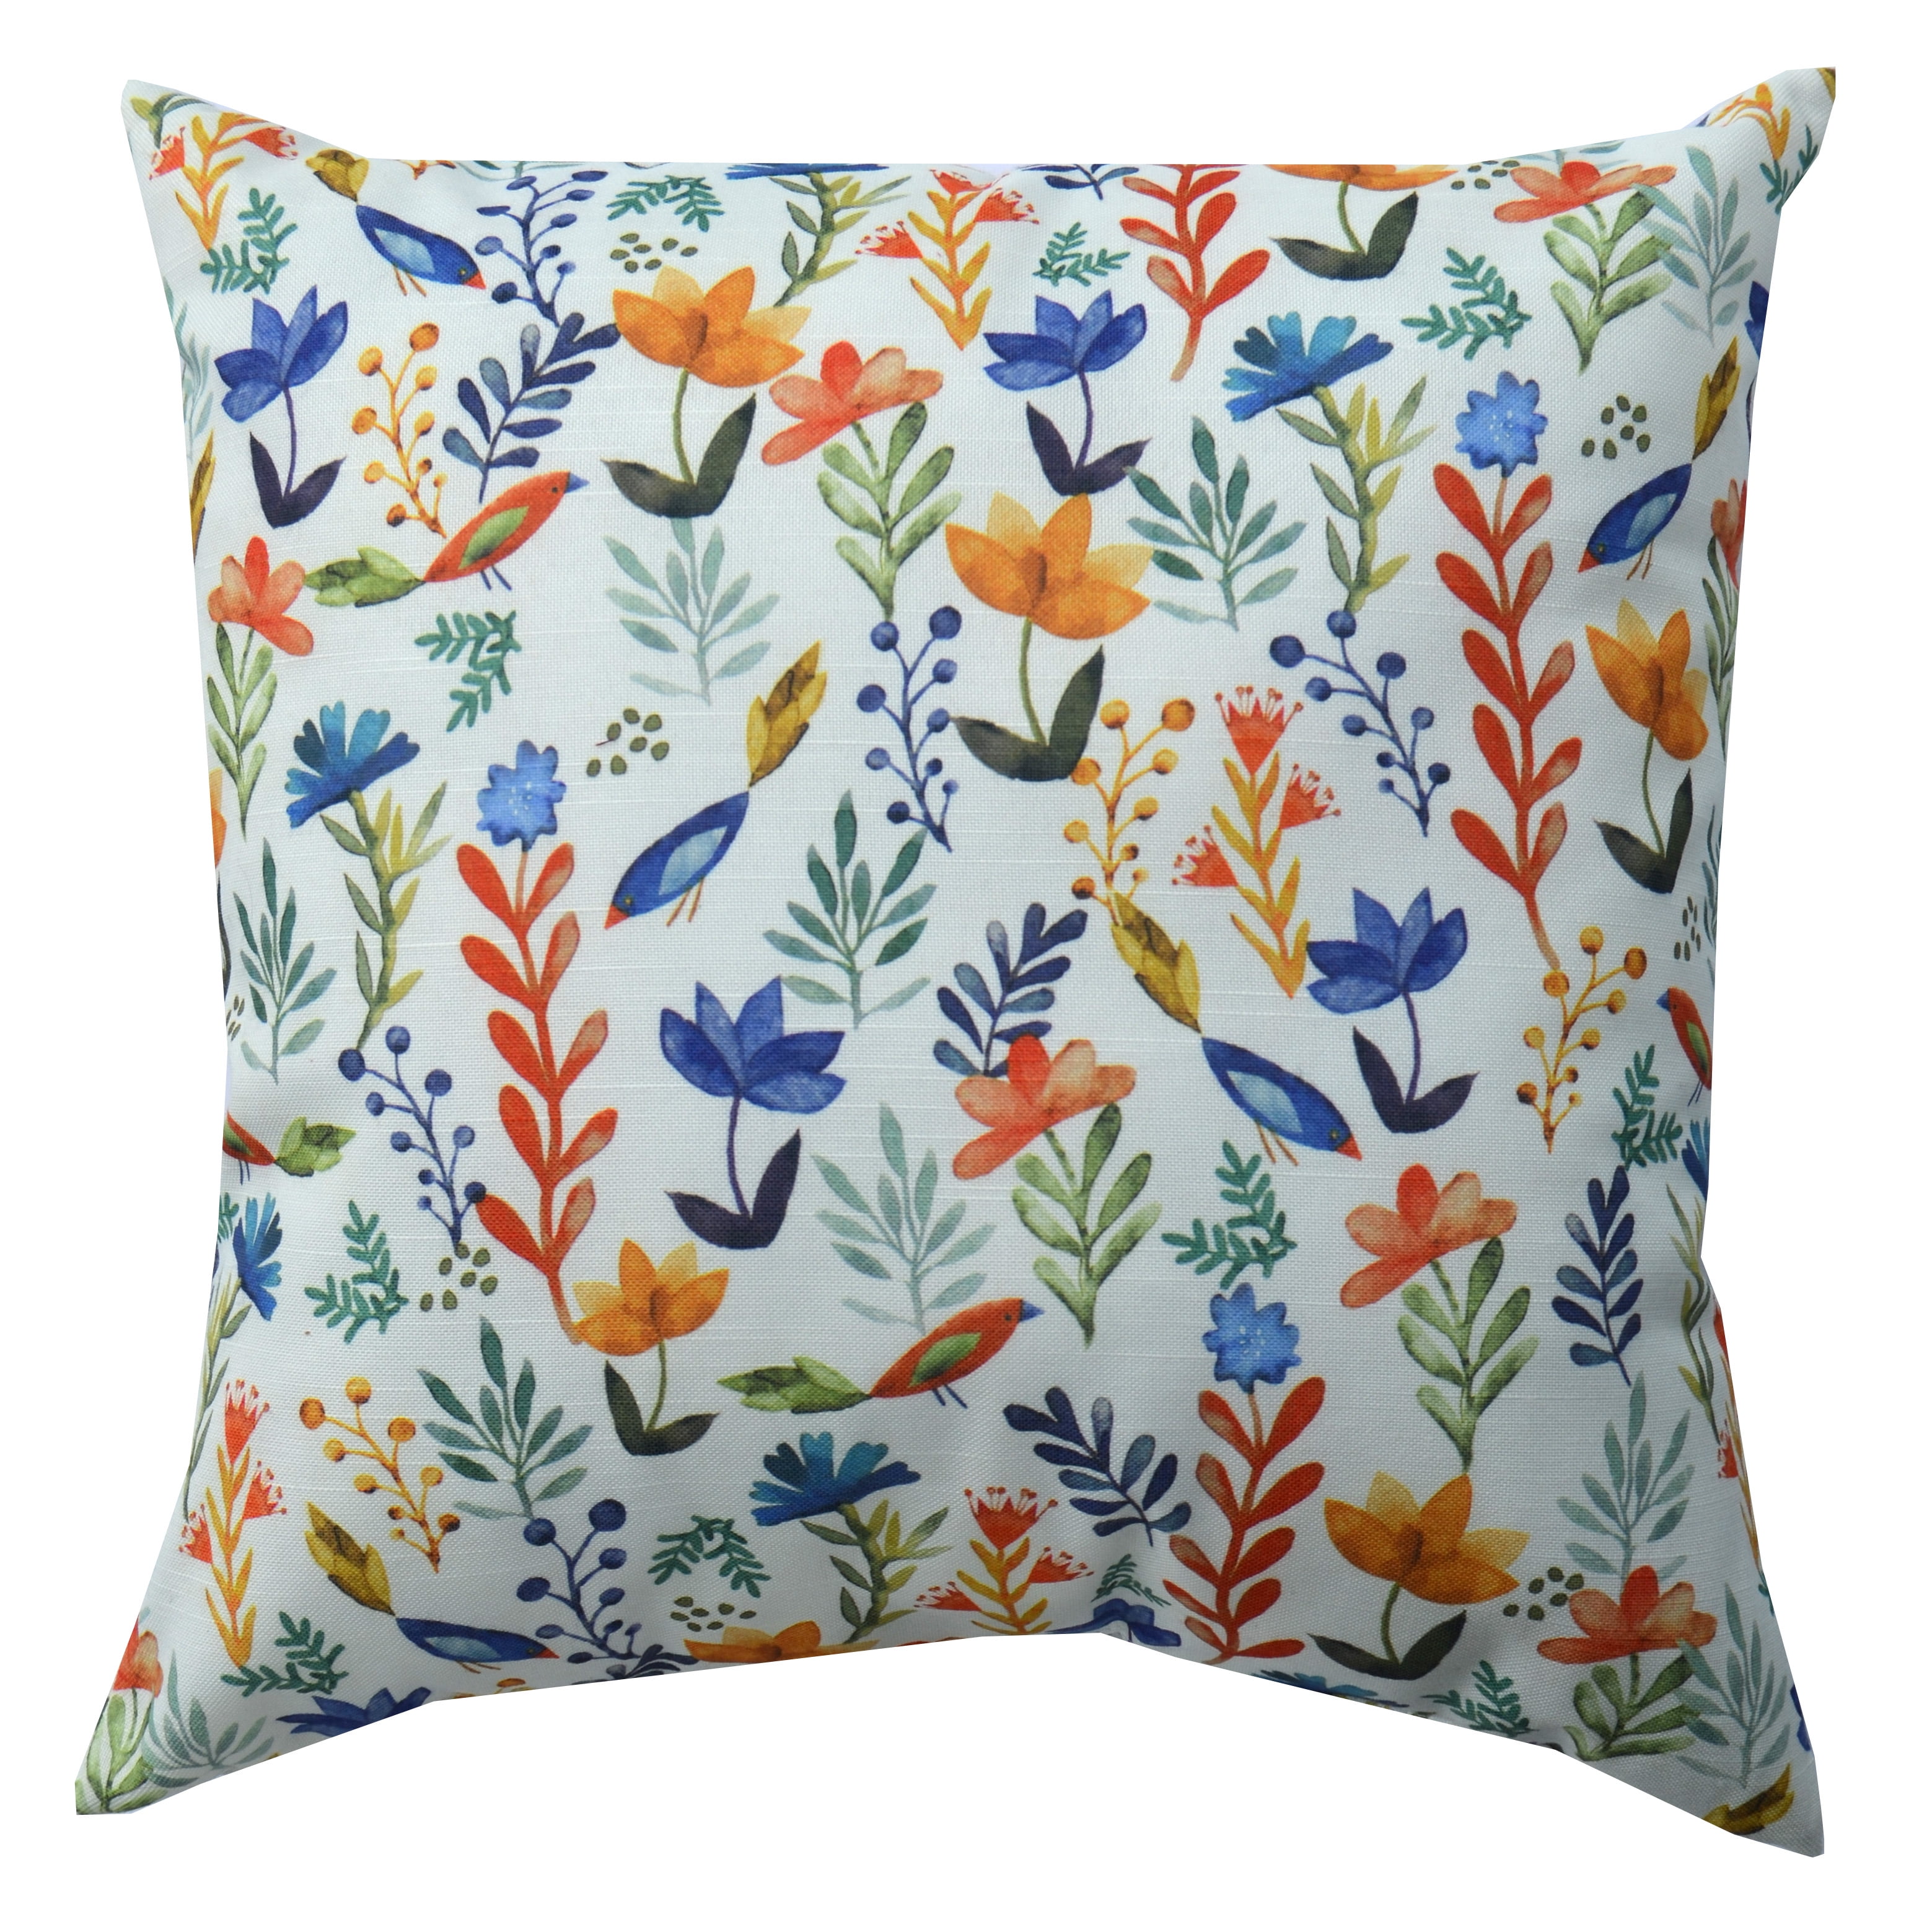 Mainstays Decorative Throw Pillow, Bird Floral, 18